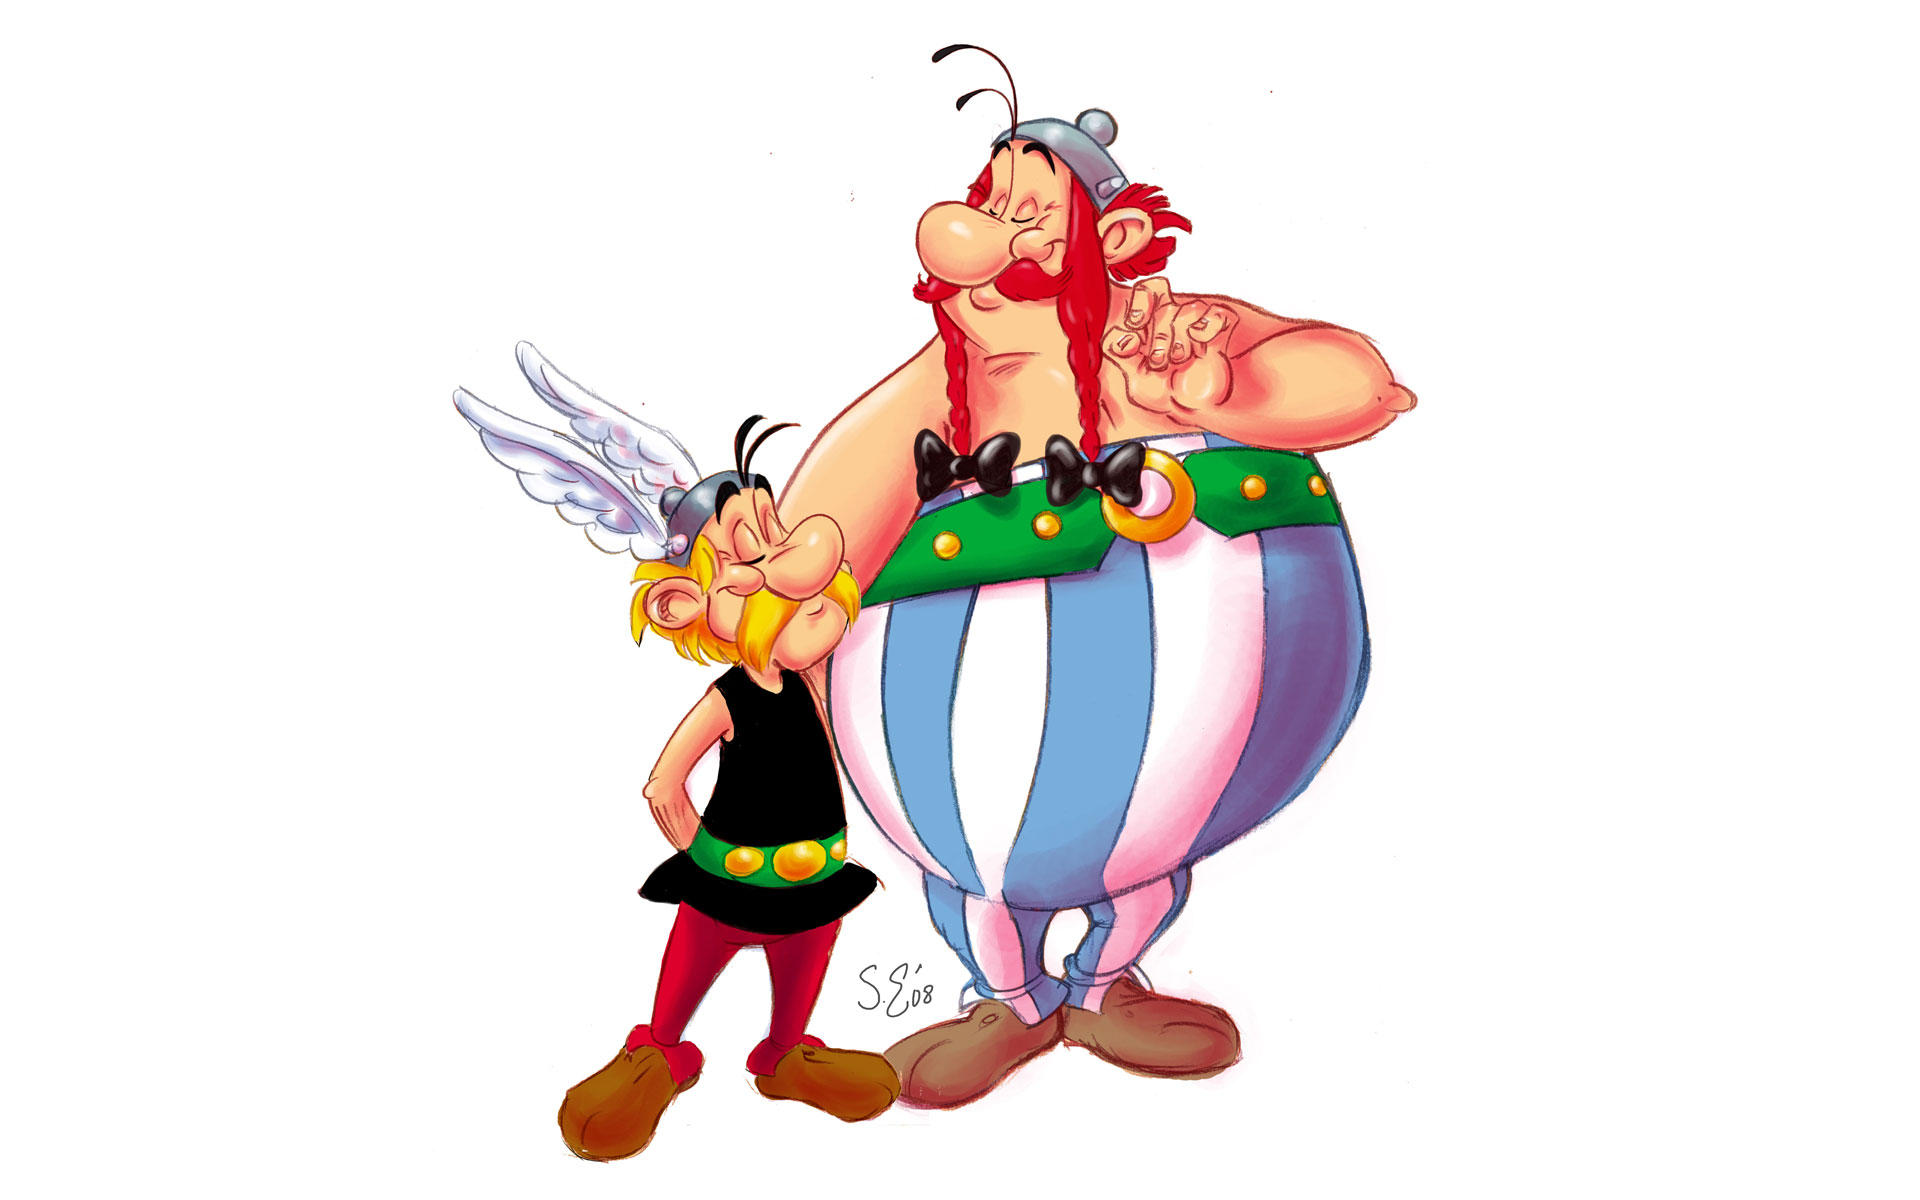 Cartoons Wallpaper Asterix And Obelix